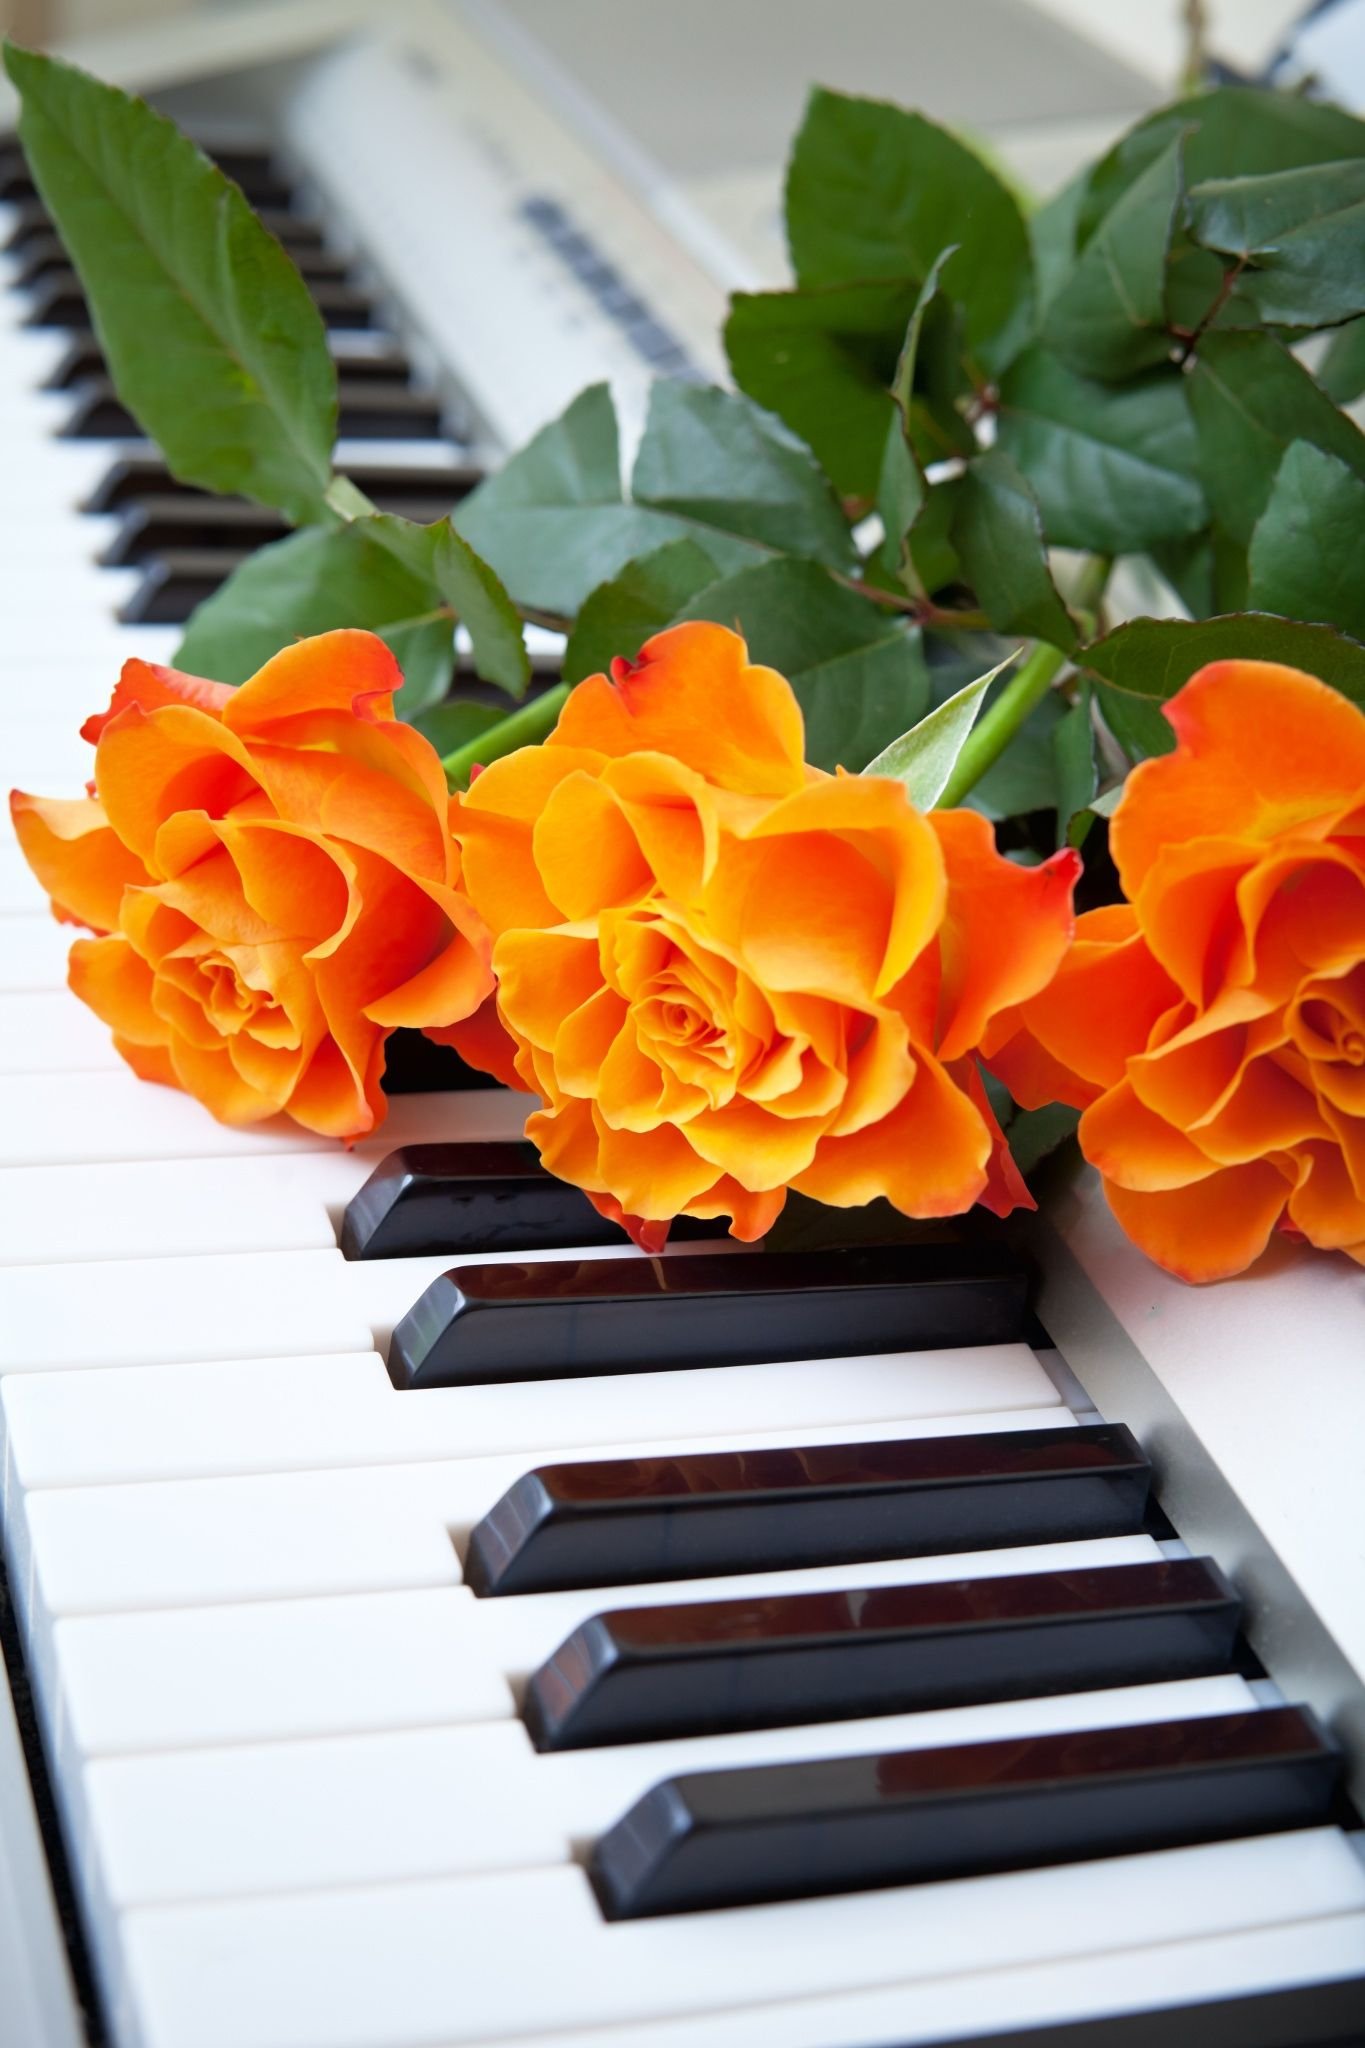 Flower melody. Пианино с цветами. Музыкальные инструменты и цветы. Фортепьяно с цветами. Цветы на рояле.